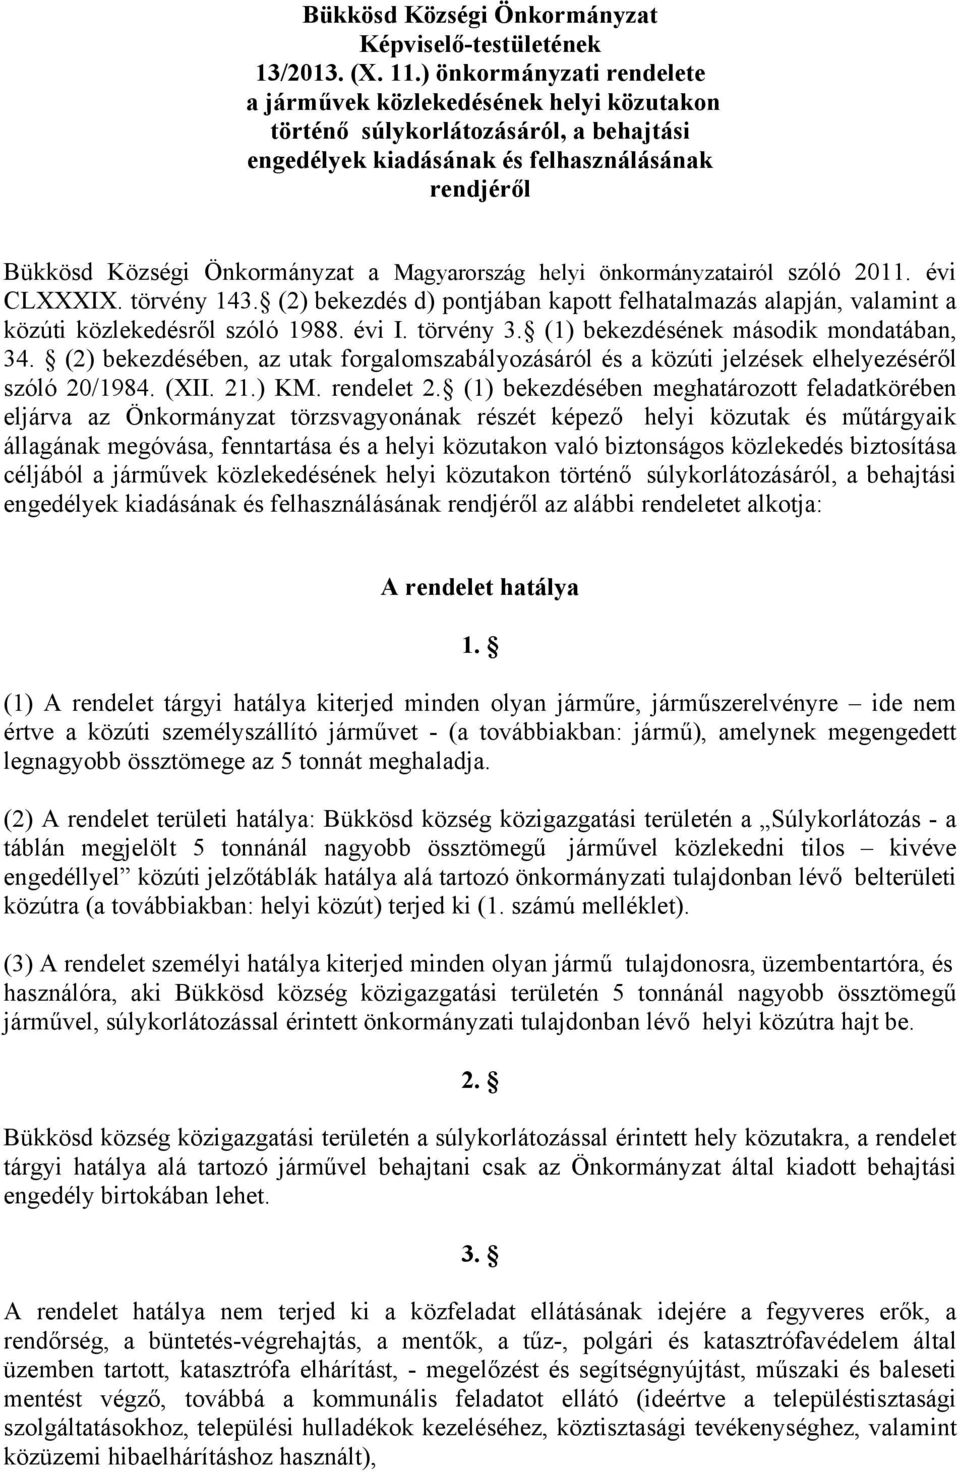 Magyarország helyi önkormányzatairól szóló 2011. évi CLXXXIX. törvény 143. (2) bekezdés d) pontjában kapott felhatalmazás alapján, valamint a közúti közlekedésről szóló 1988. évi I. törvény 3.